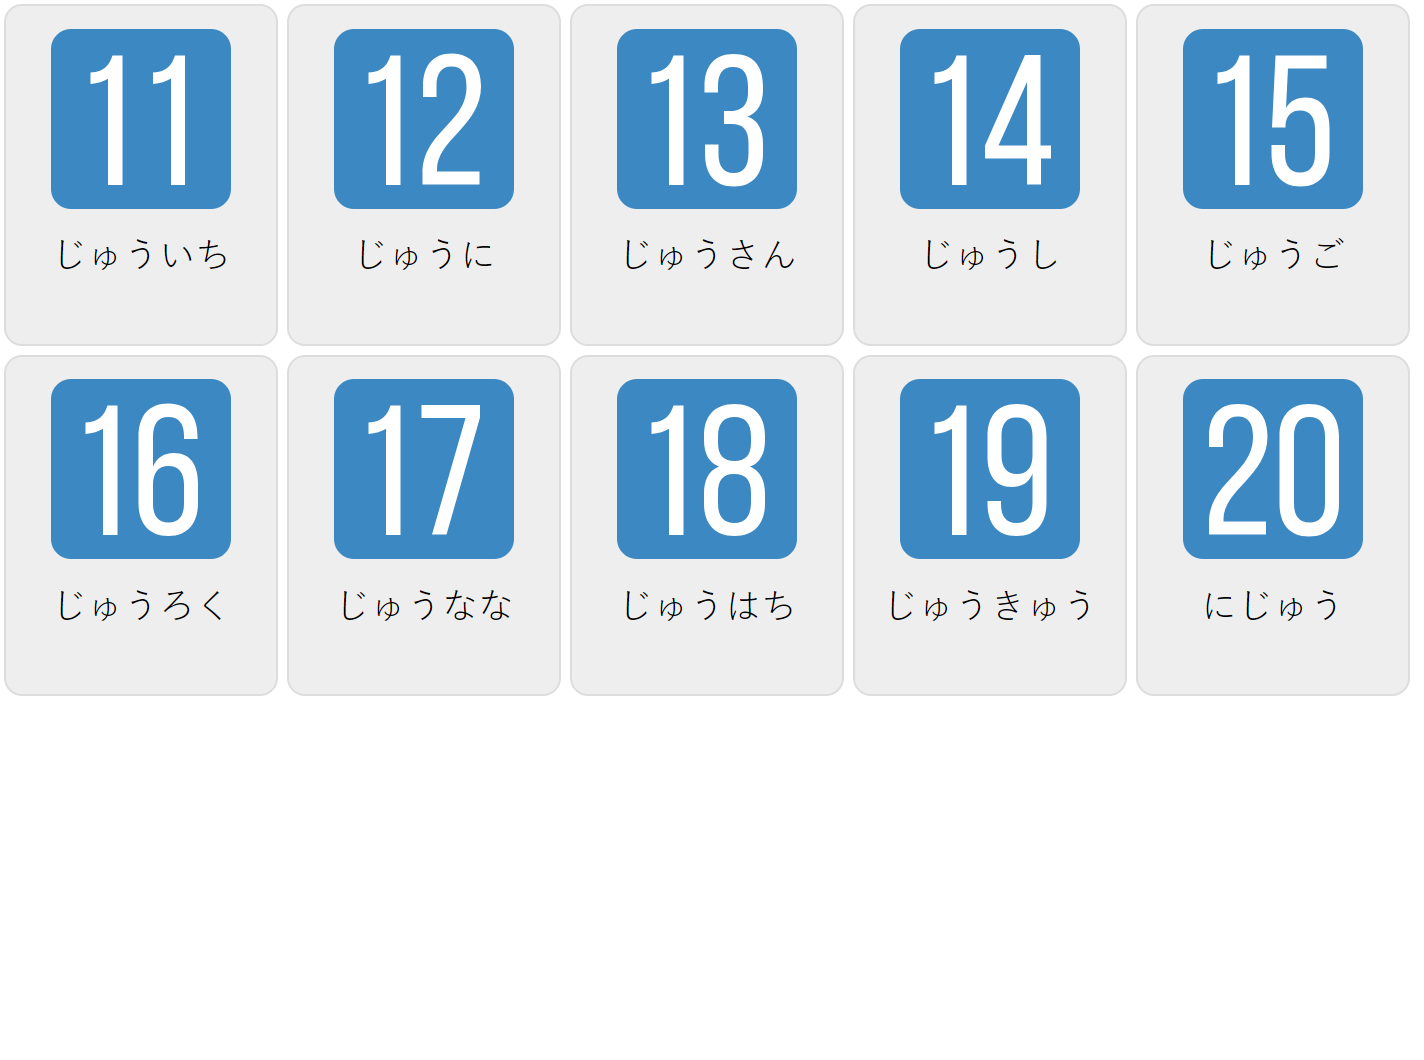 Цифры 11-20 на японском языке